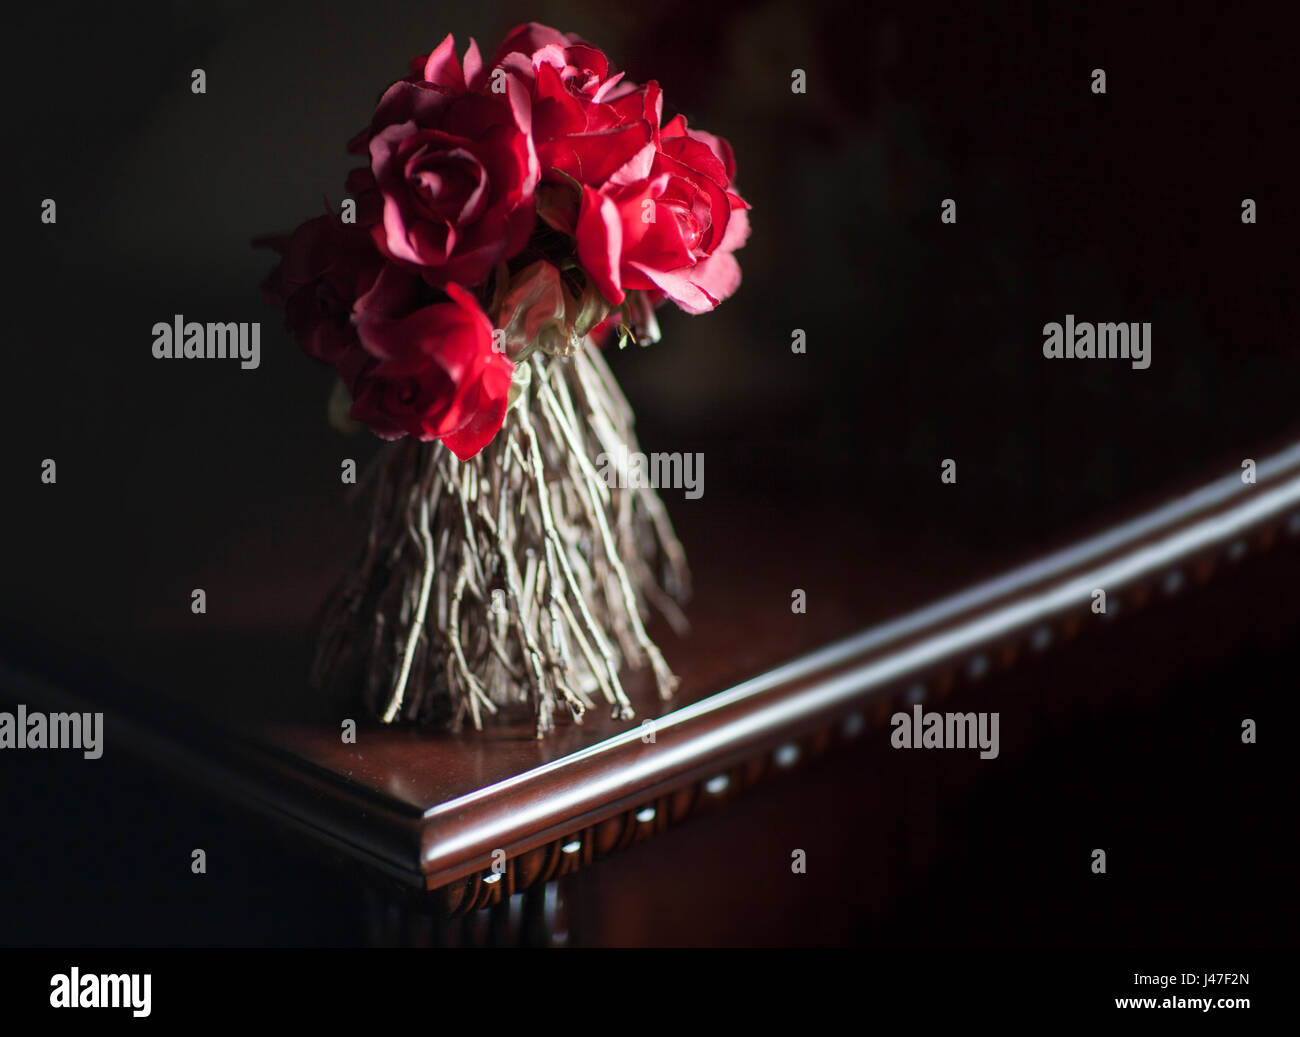 Bouquet von getrockneten roten Rosen mit verdrehten Stämmen in einem Bouquet in dunklen dramatische Beleuchtung auf einem polierten dunklem Hartholz Tisch Stockfoto